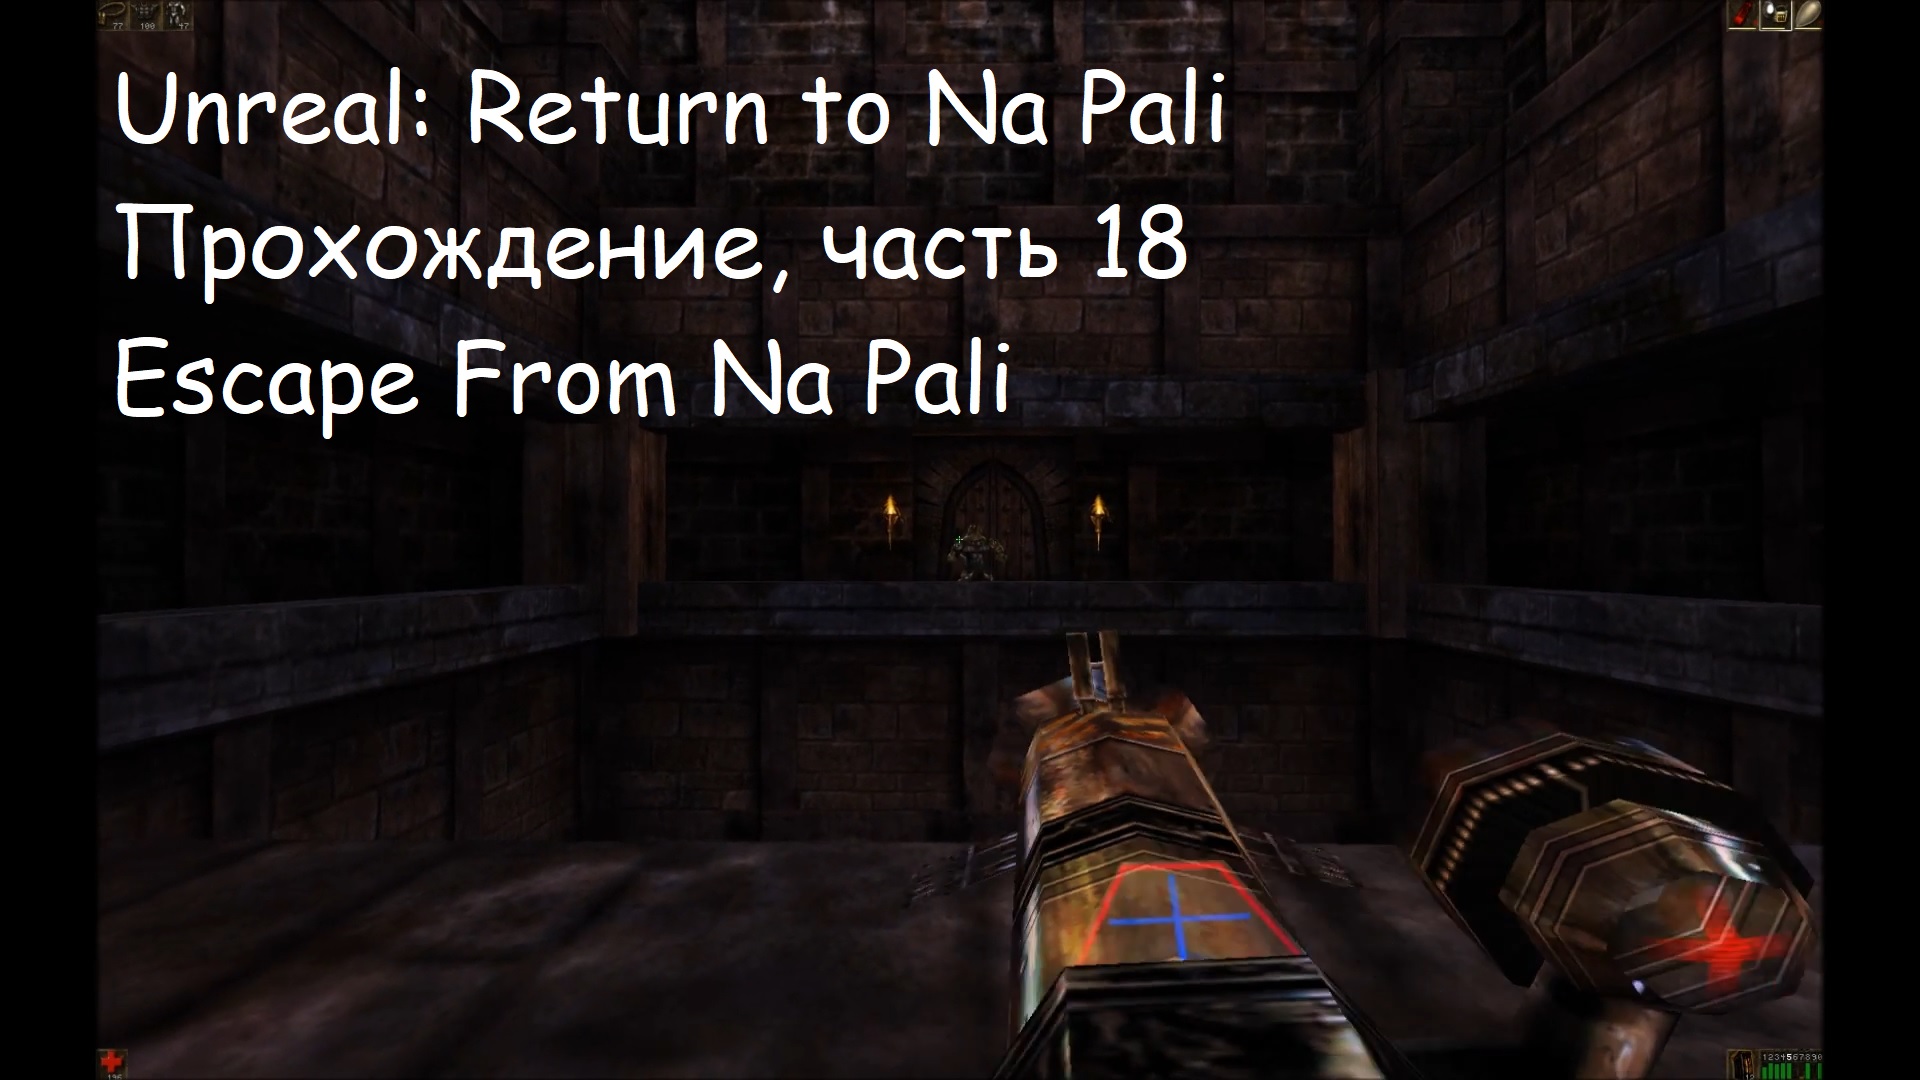 Unreal: Return to Na Pali, Прохождение, часть 18 - Escape From Na Pali